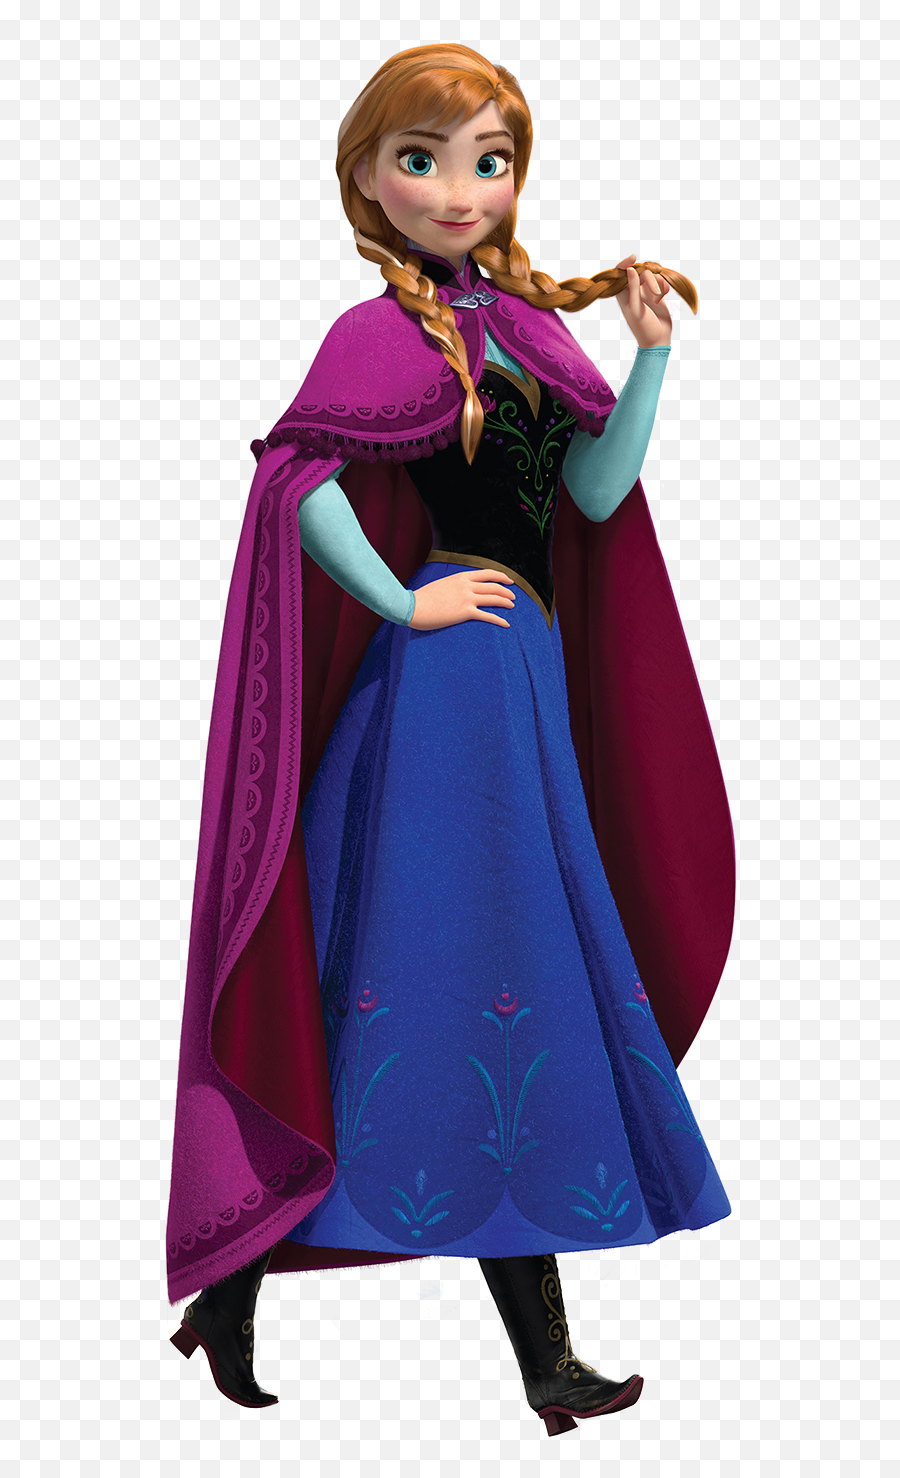 Anna - Anna Frozen Transparent Background Emoji,Oh My Disney Frozen Emoji